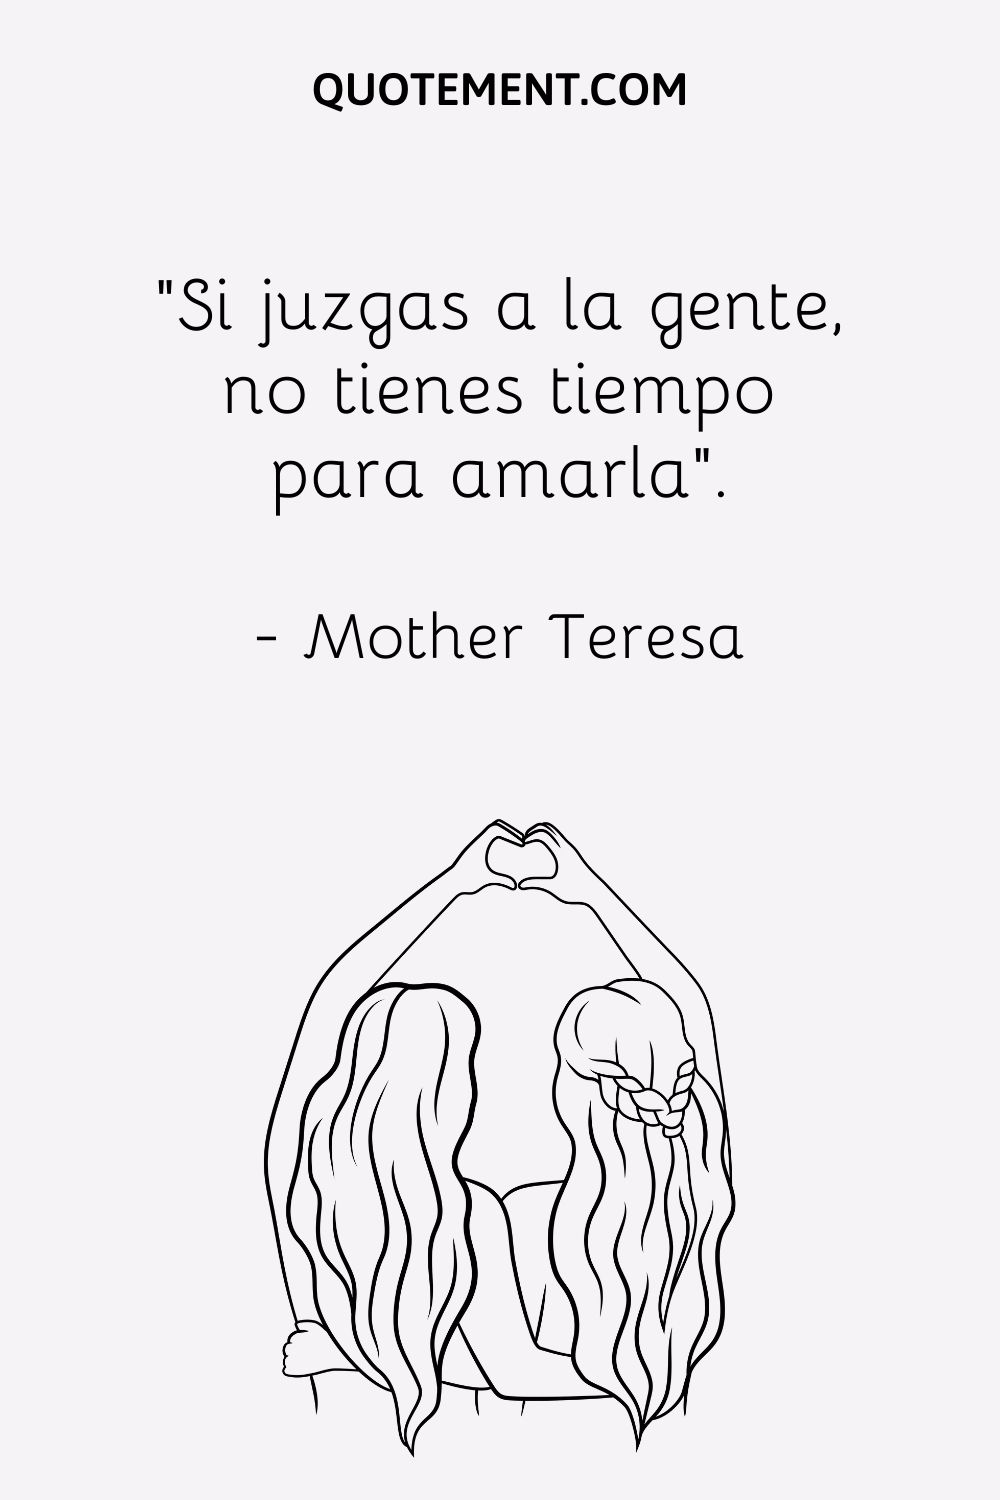 "Si juzgas a la gente, no tienes tiempo para amarla". - Madre Teresa